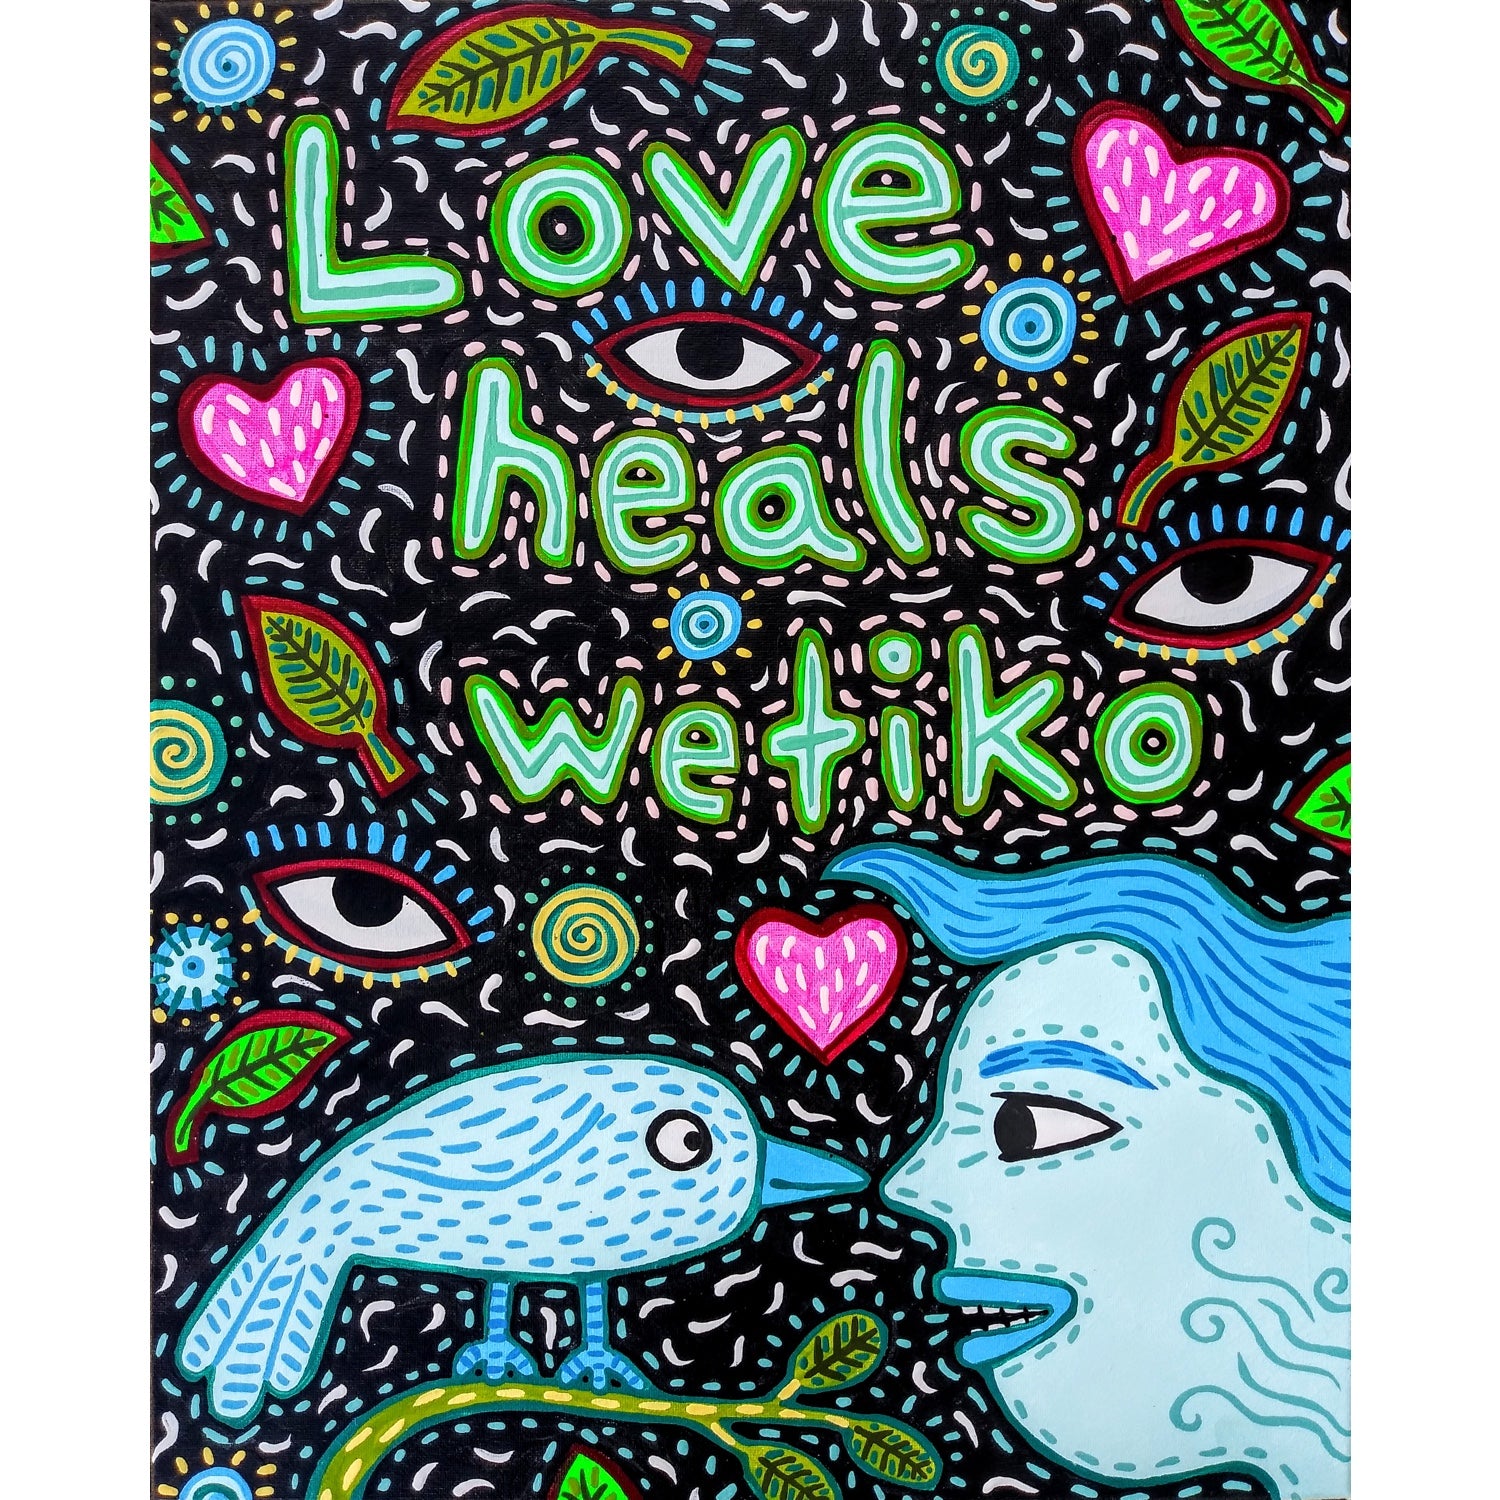 Love Heals Wetiko (print it yourself)